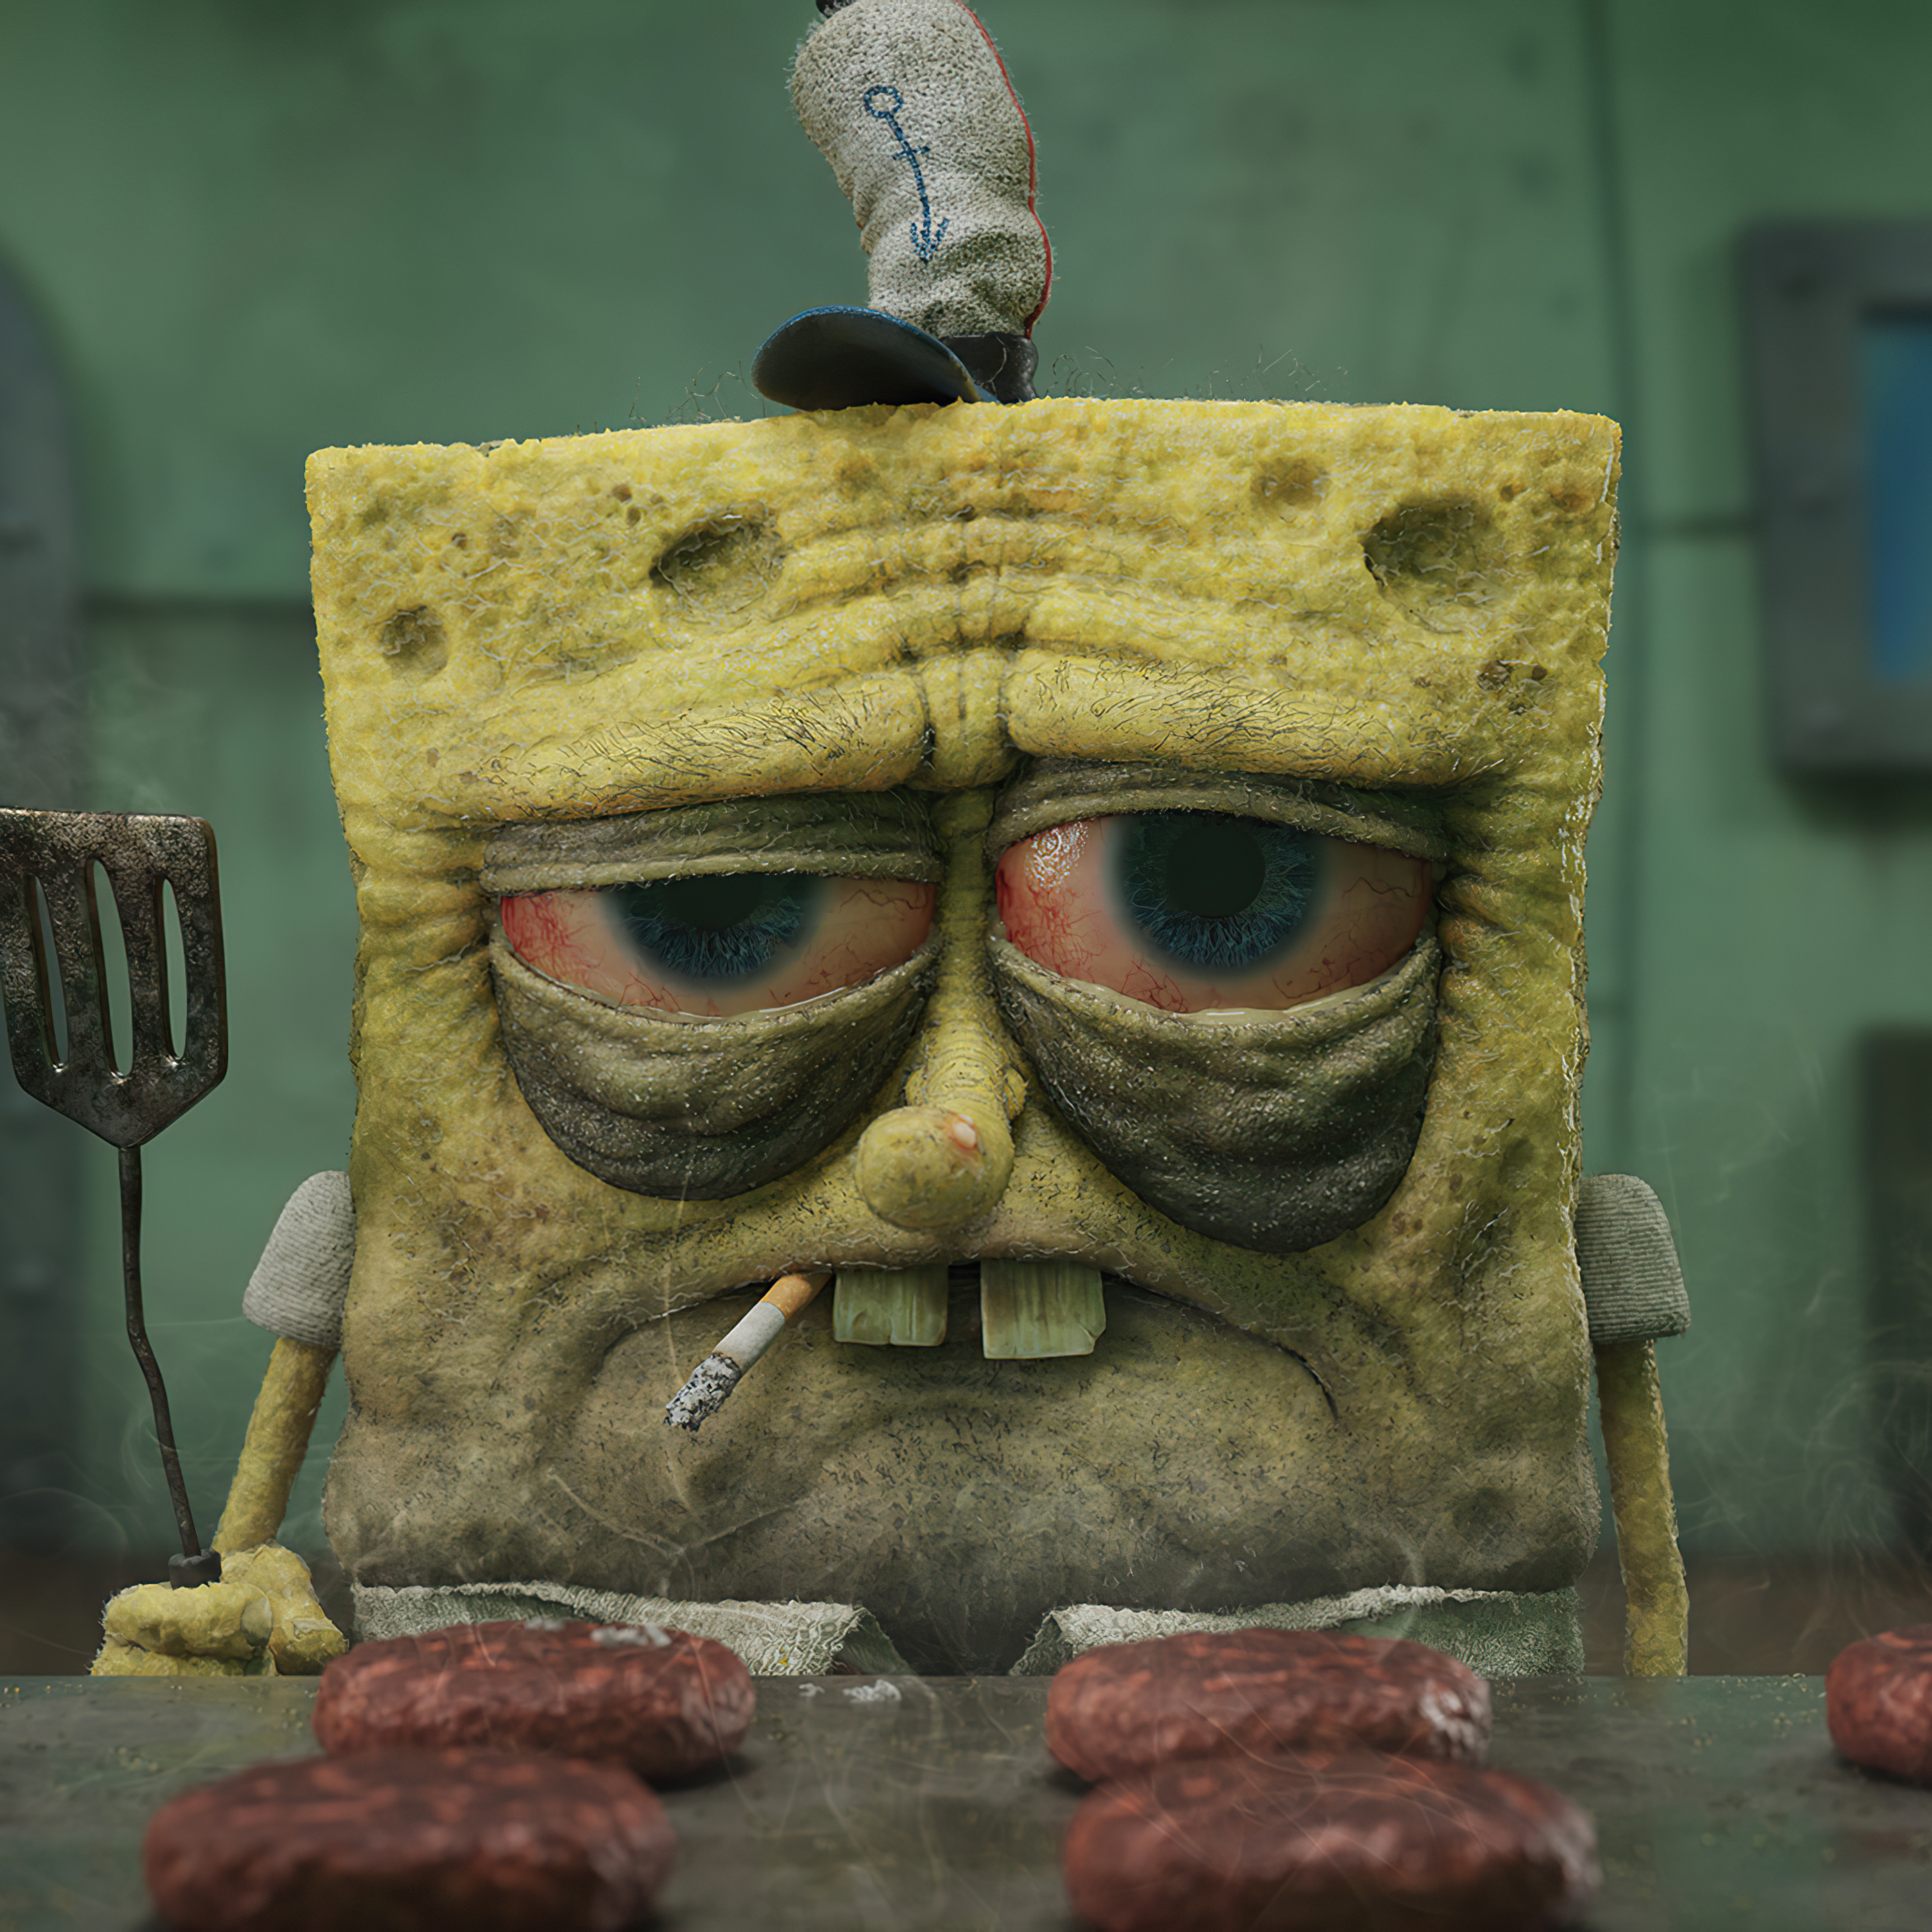 spongebob-cooking-time-9h.jpg. 